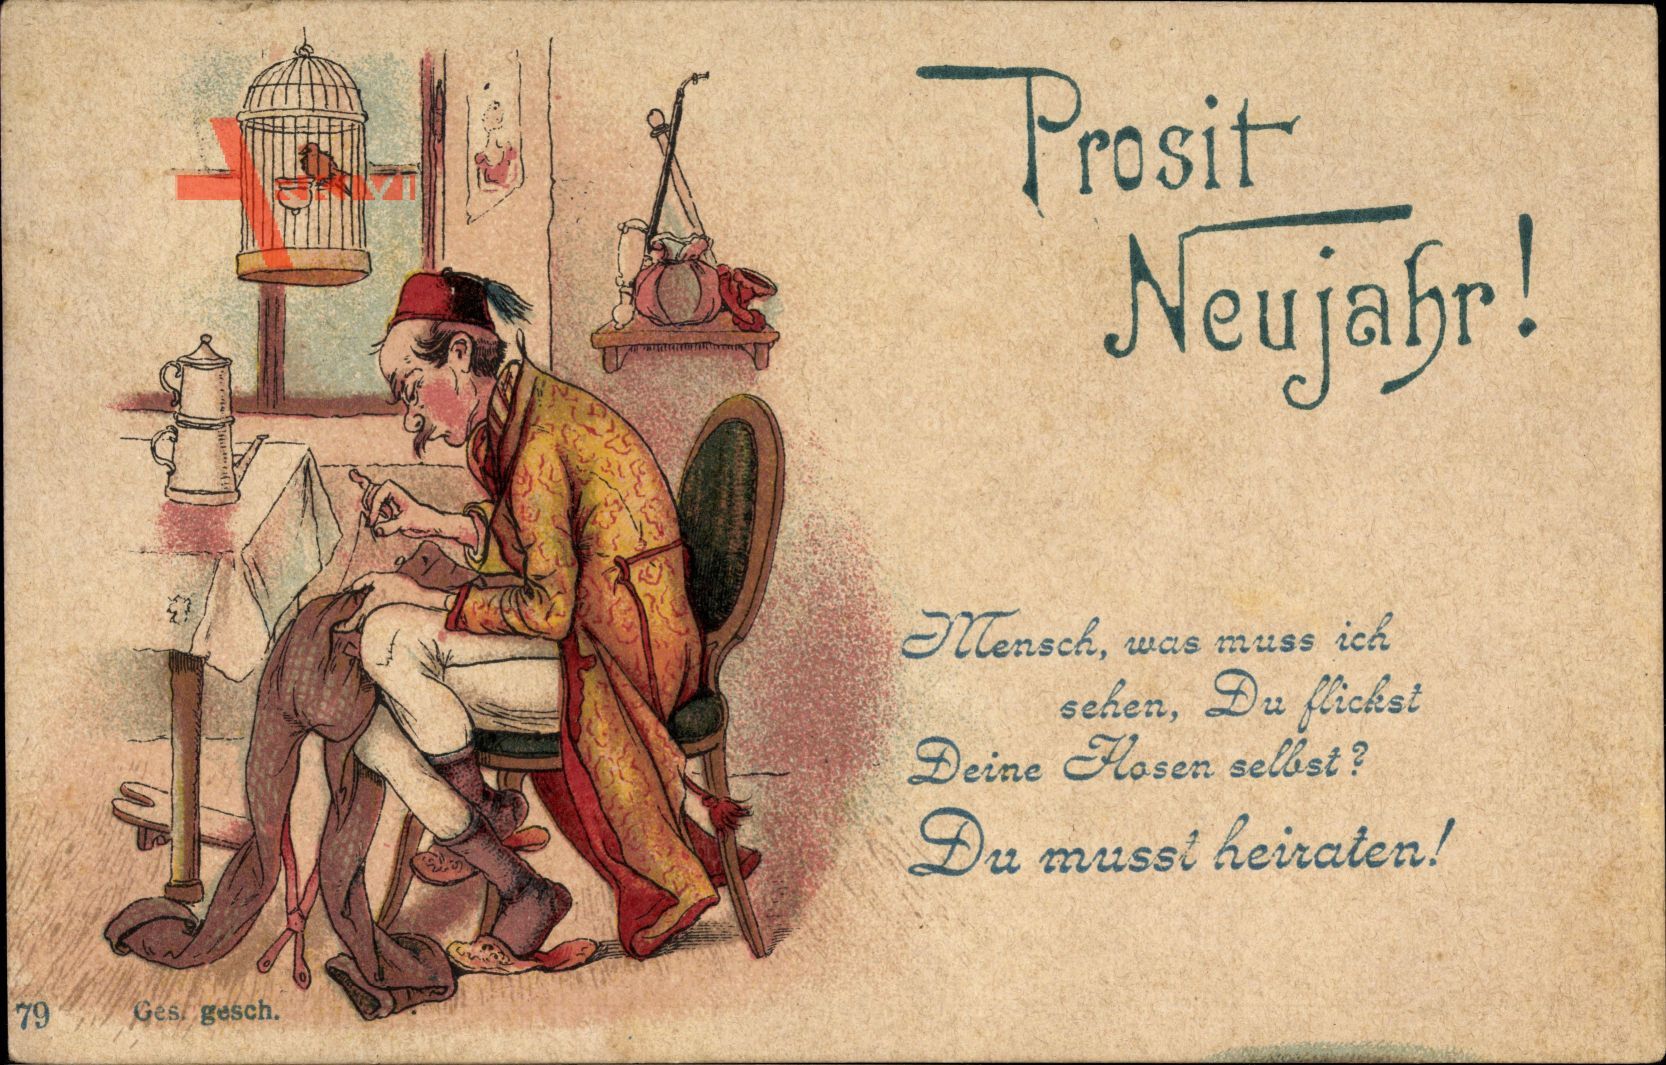 Vorläufer Glückwunsch Neujahr,Mann flickt Hosen selbst,Du musst heiraten,1894